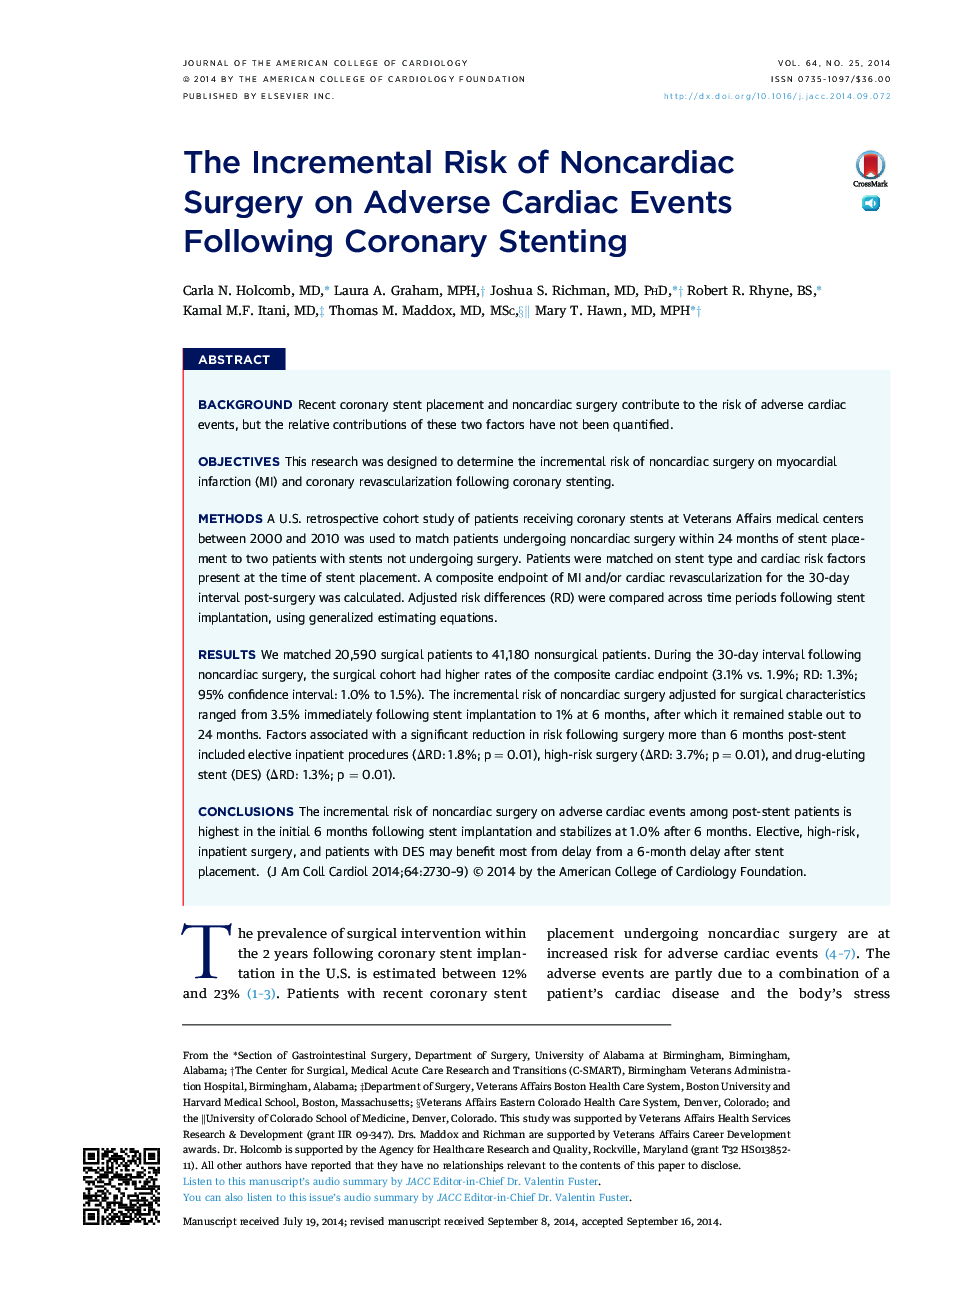 خطر افزایشی جراحی غیرارادی در رویدادهای قلبی عروقی پس از استنت گذاری کرونر 